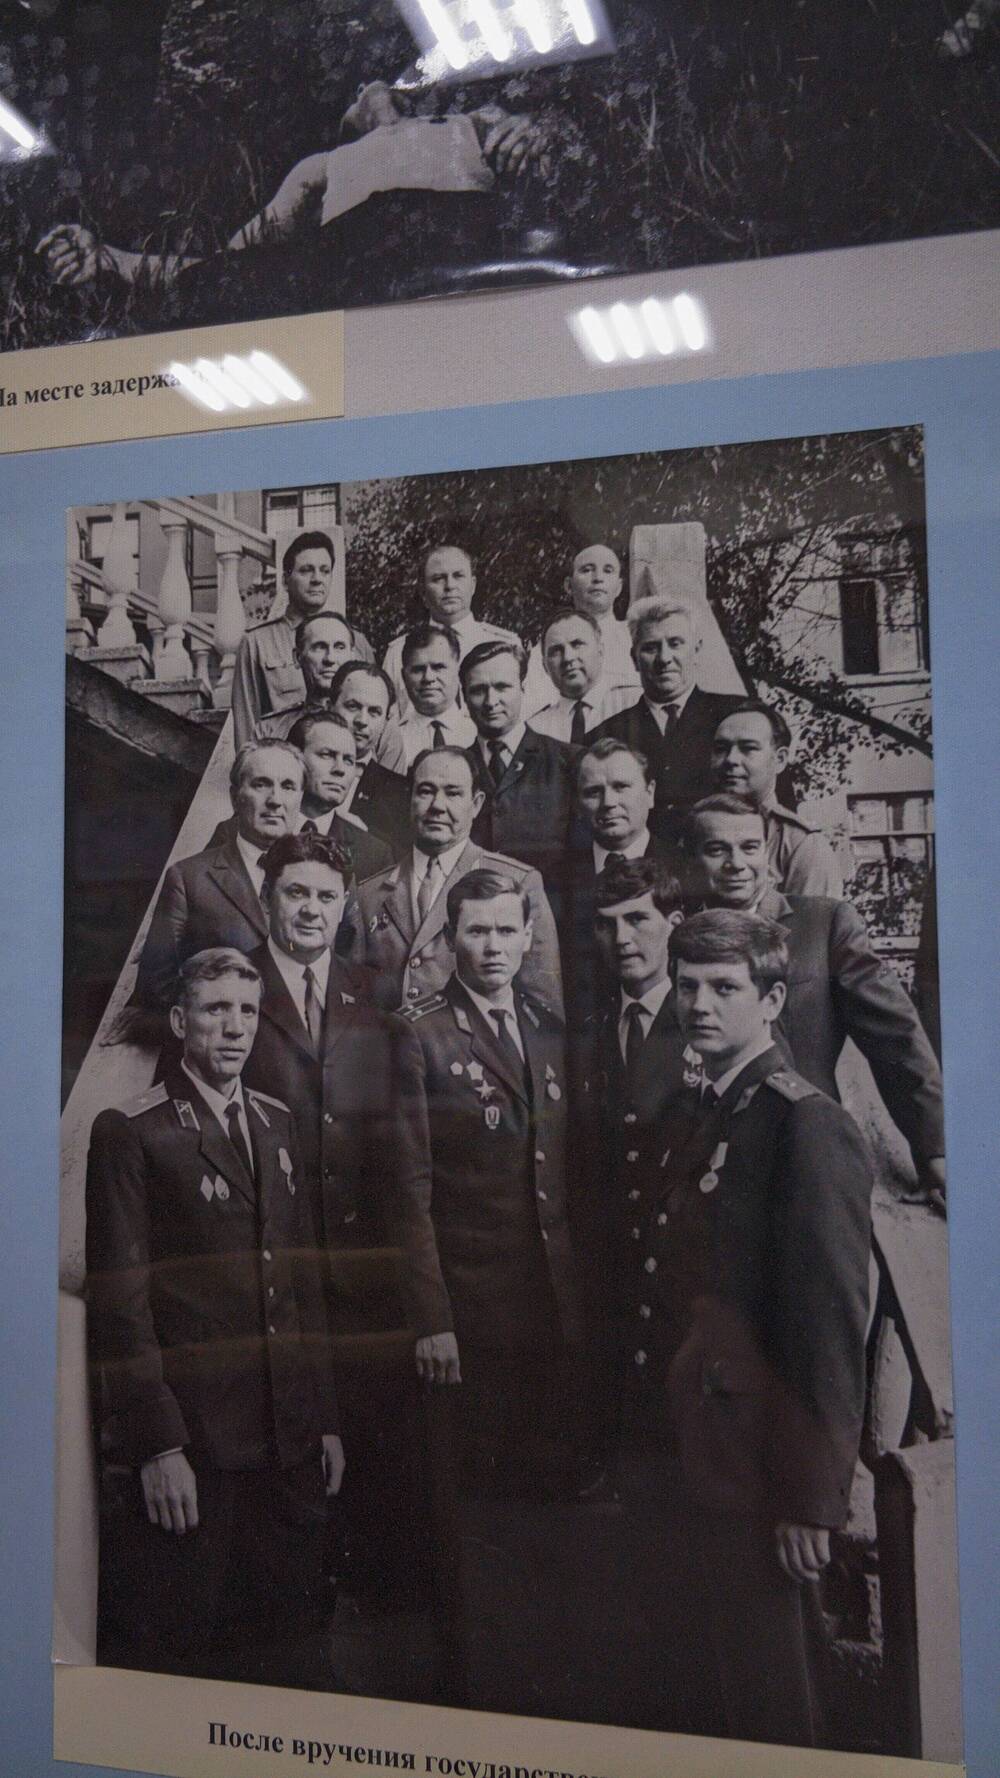 Фото черно-белое групповое  После вручения государственных наград